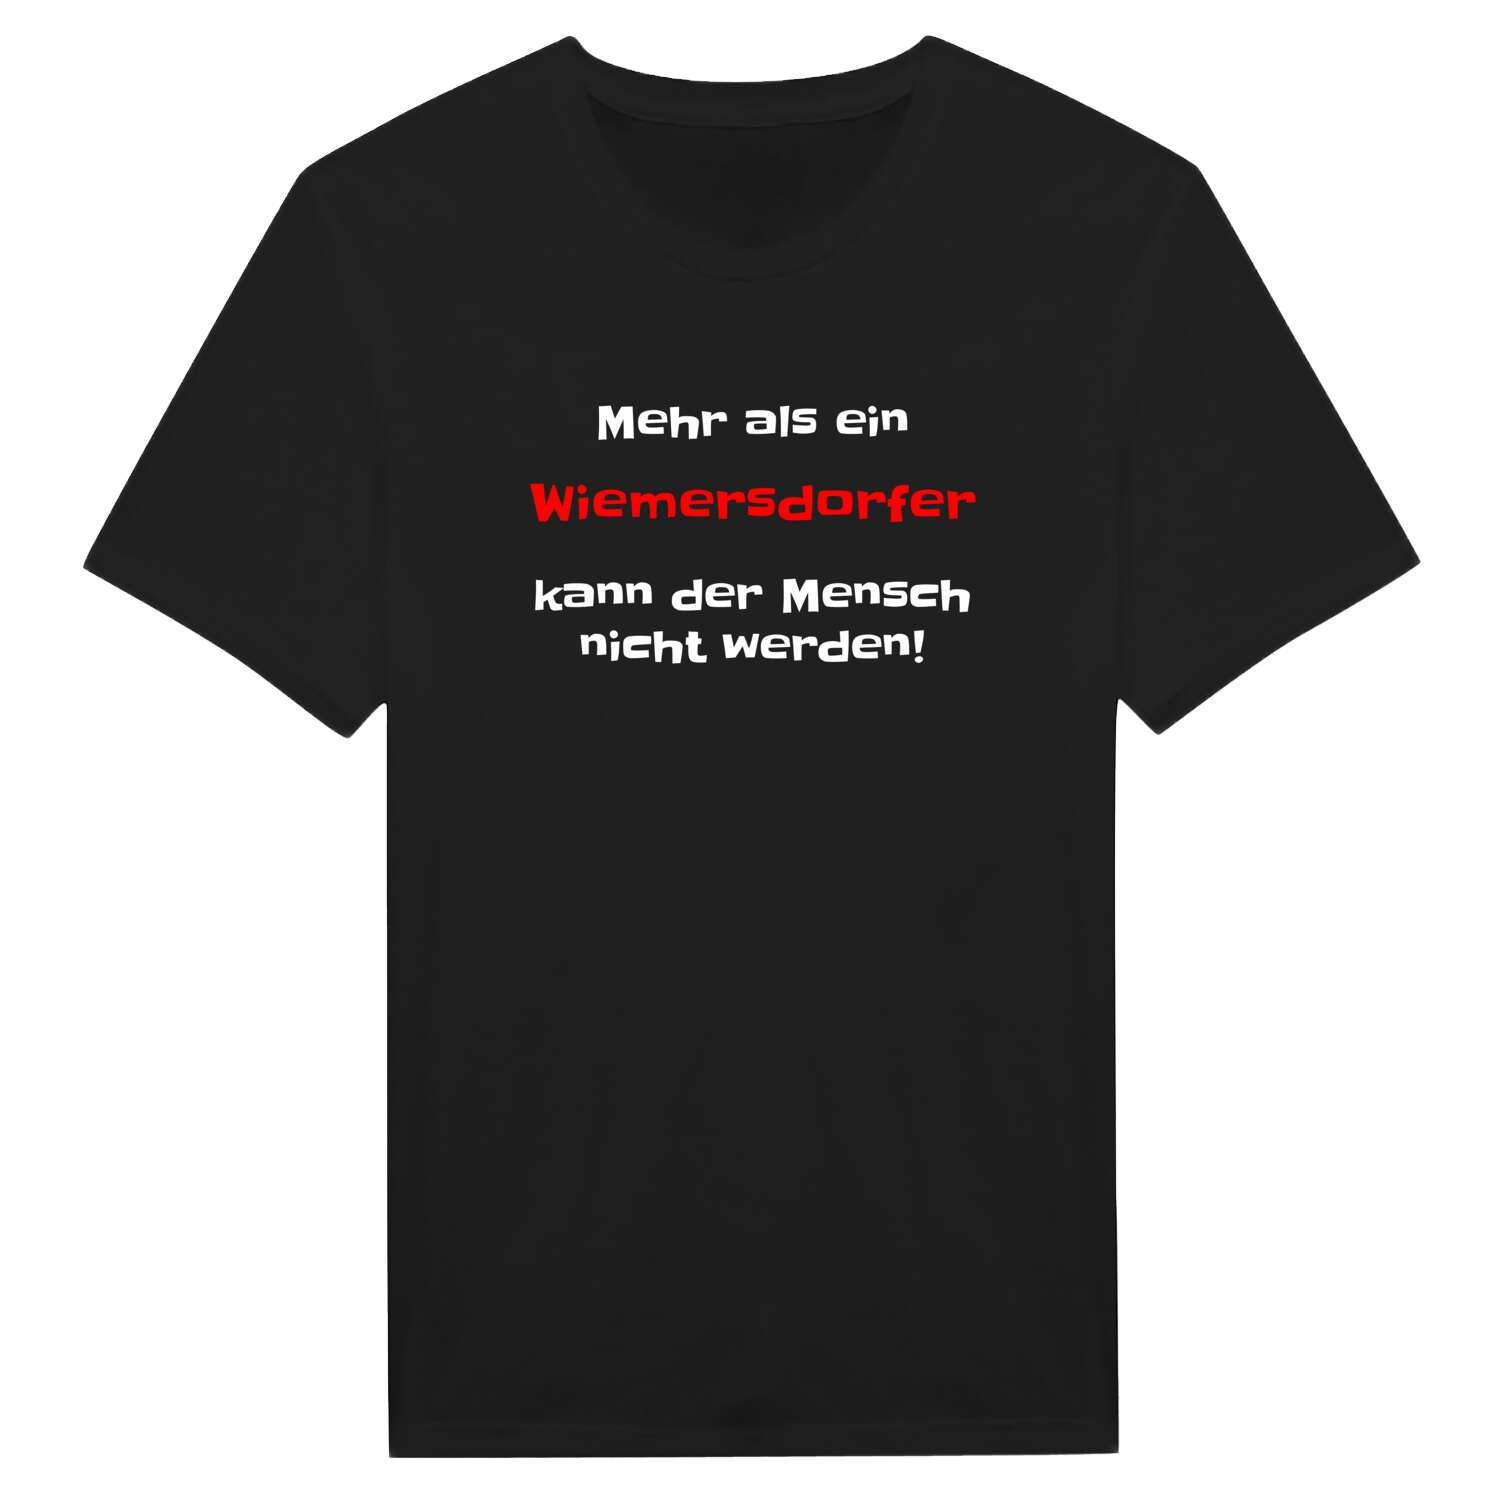 Wiemersdorf T-Shirt »Mehr als ein«